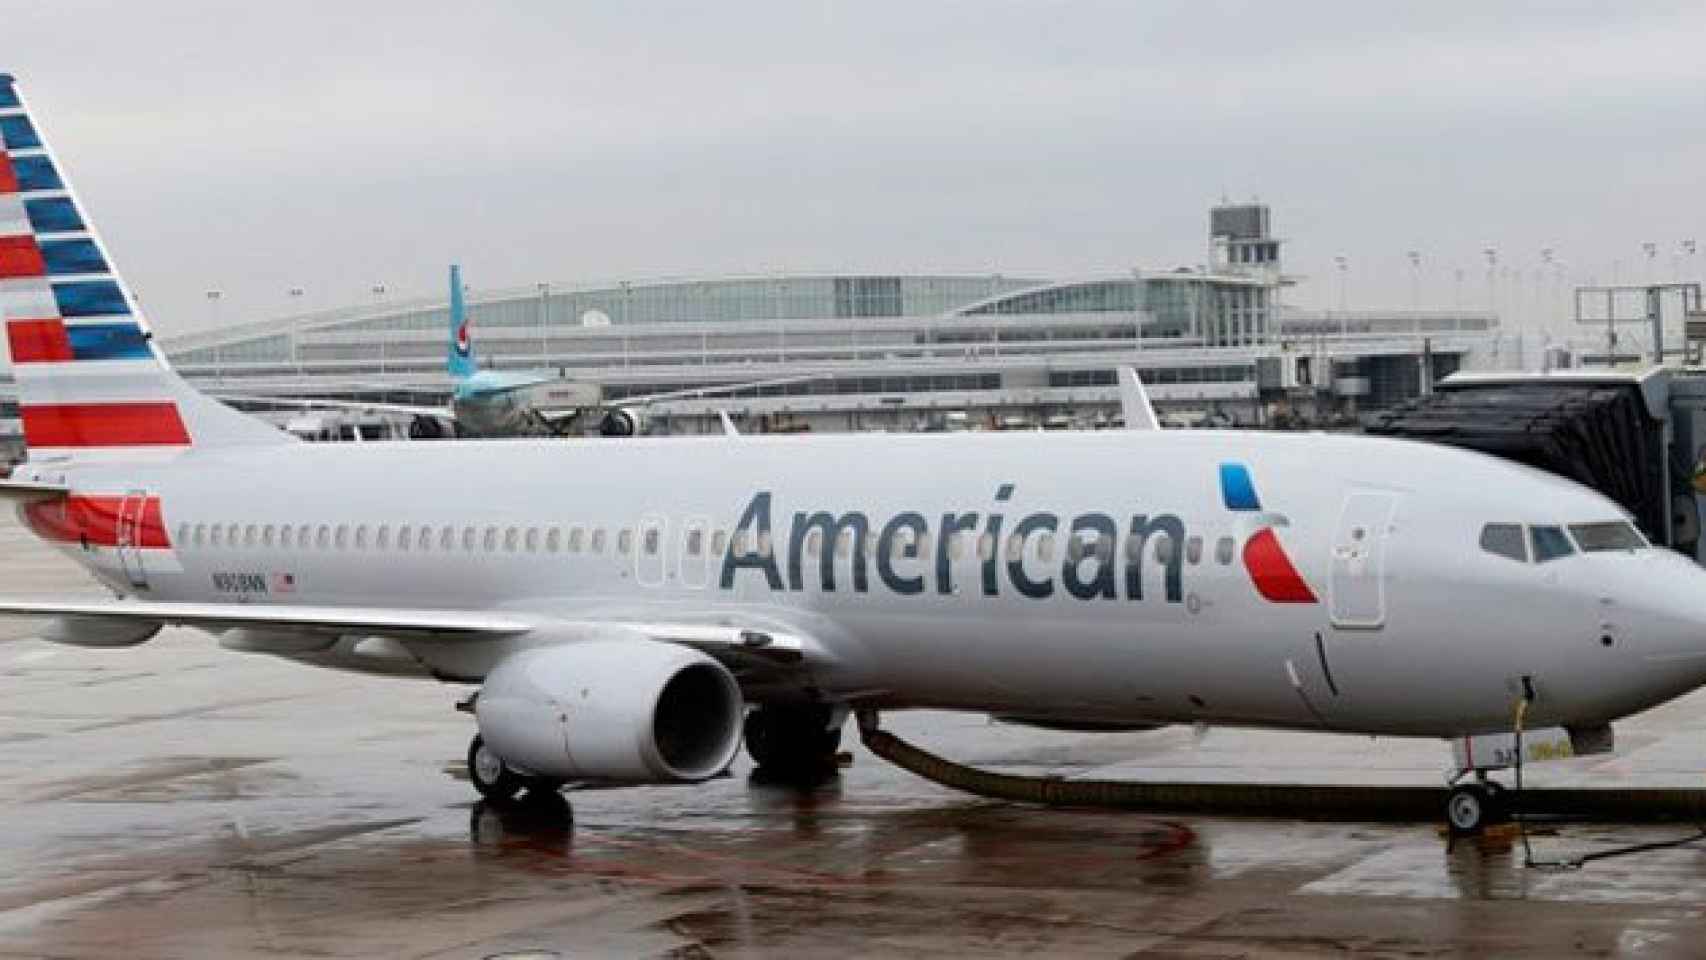 Un avión de American Airlines en pista en una imagen de archivo / EFE